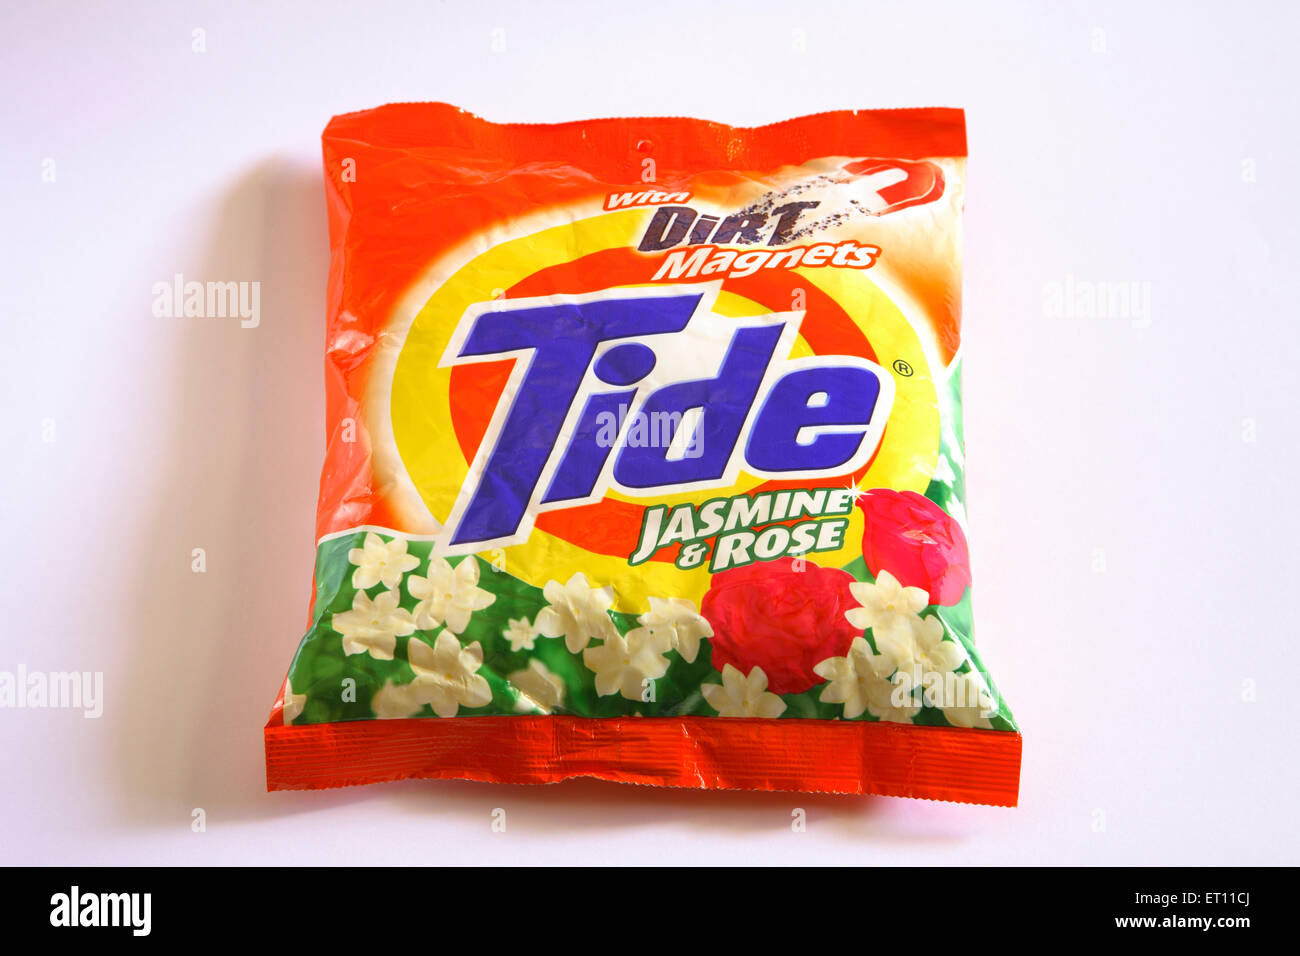 Polvere detergente Tide pacchetto su sfondo bianco Foto Stock